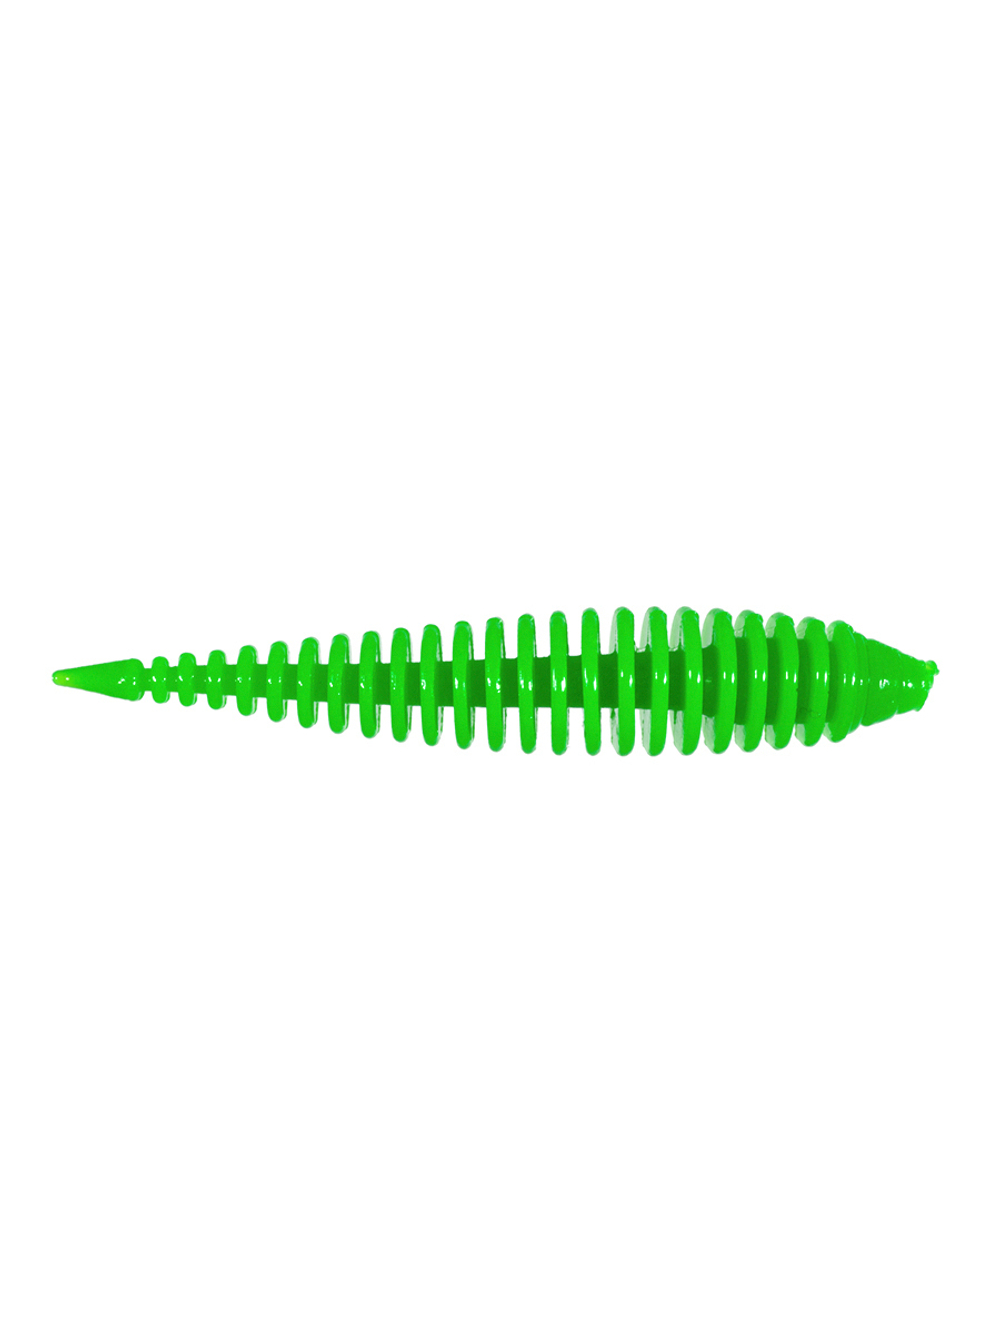 Приманка ZUB-MAGGOT SLIM 50мм-10шт, (цвет 401) зеленый